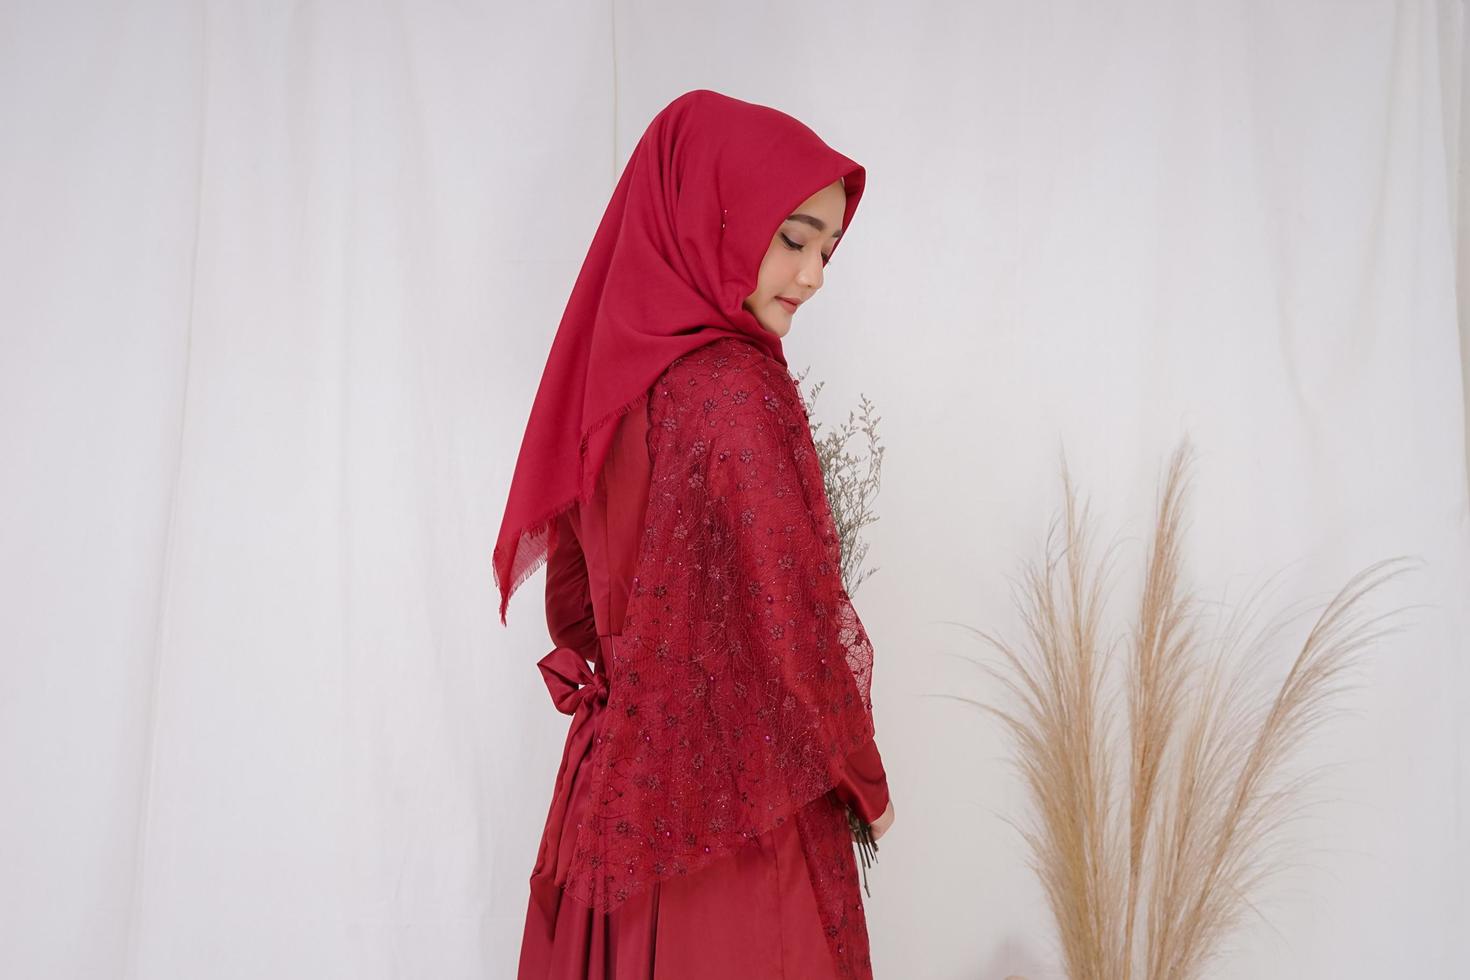 Schönes islamisches weibliches Modell mit Hijab-Mode, einem modernen Lifestyle-Outfit für muslimische Frauen. Konzept ein Hochzeitskleid, Schönheit oder Eidul Fitri. ein asiatisches Mädchenmodell mit Hijab bei einem Indoor-Fotoshooting foto